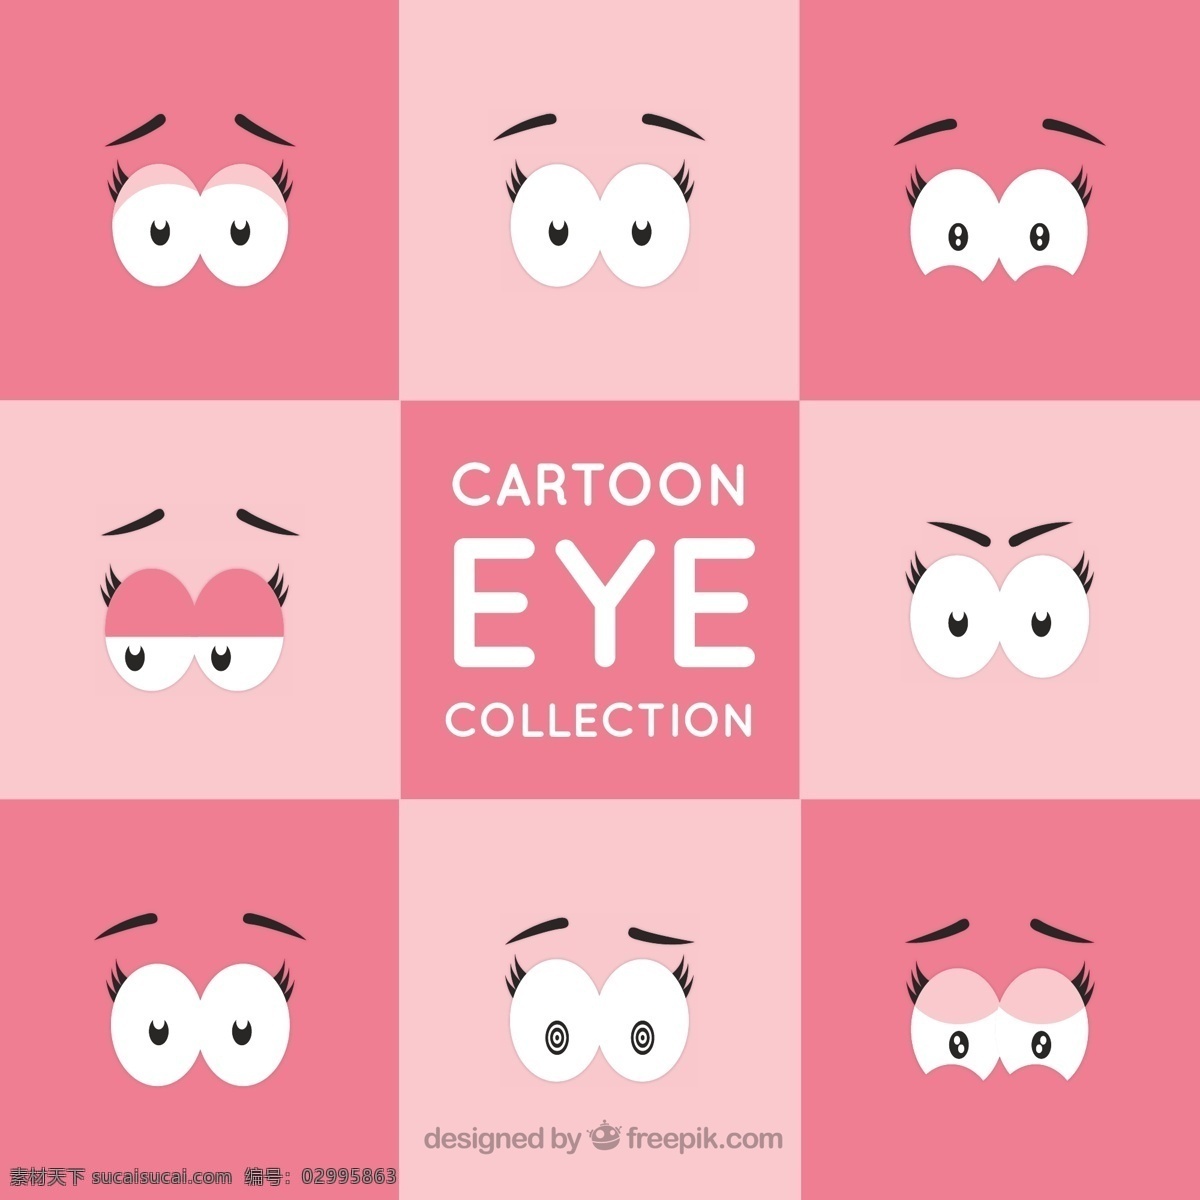 副 富于 表现力 眼睛 卡通 漫画 元素 人物 卡通人物 眉毛 卡通眼睛 套装 表情 素描 小学生